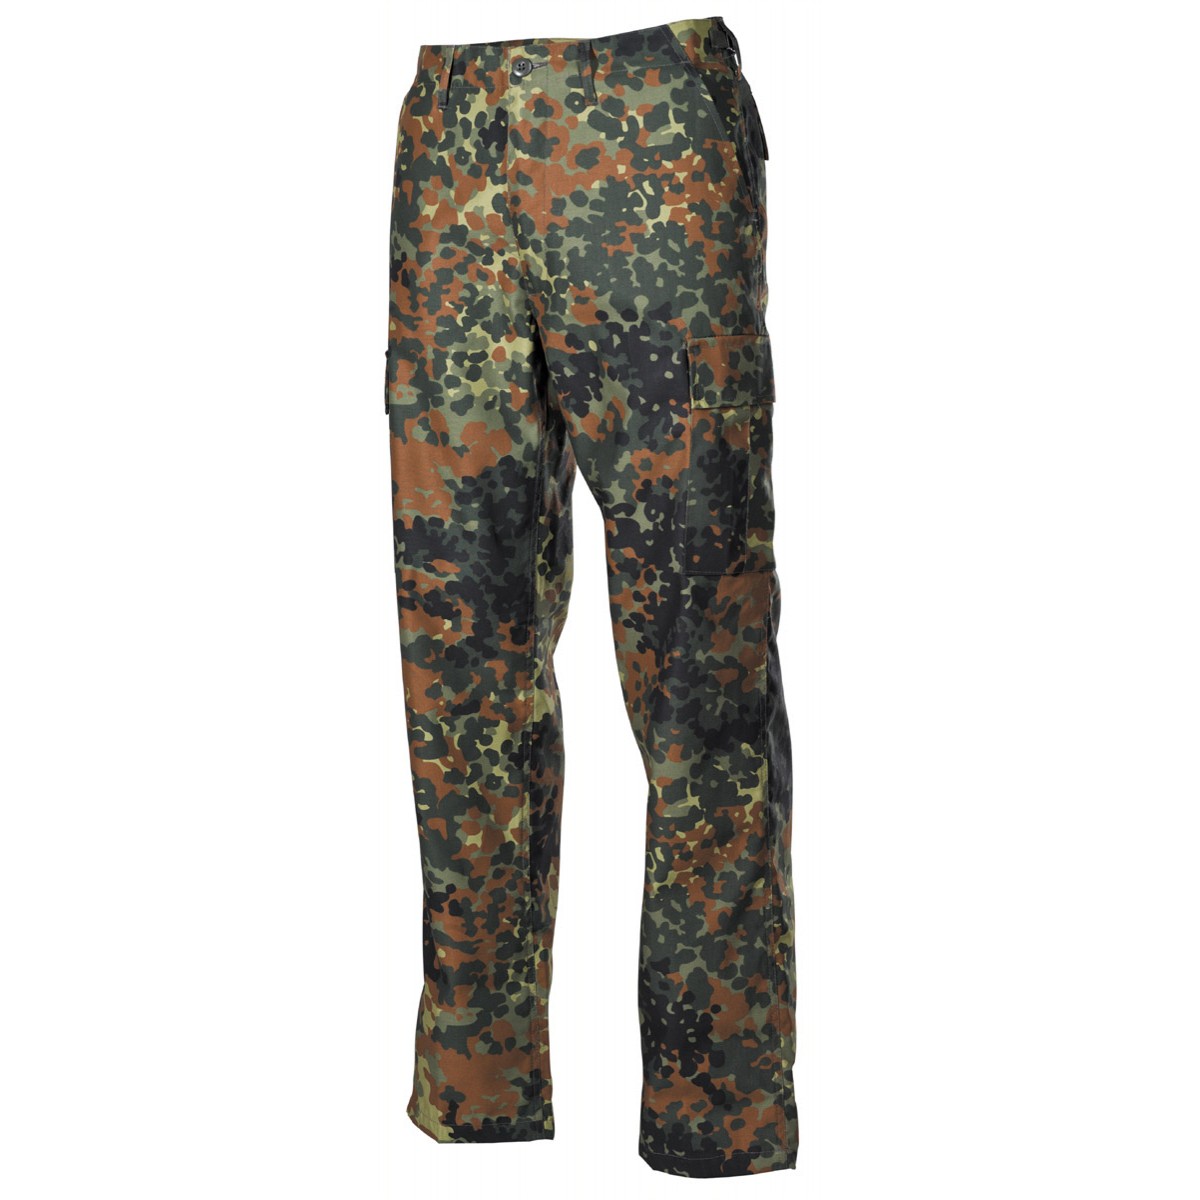 Kalhoty MFH US Ranger - flecktarn, XL